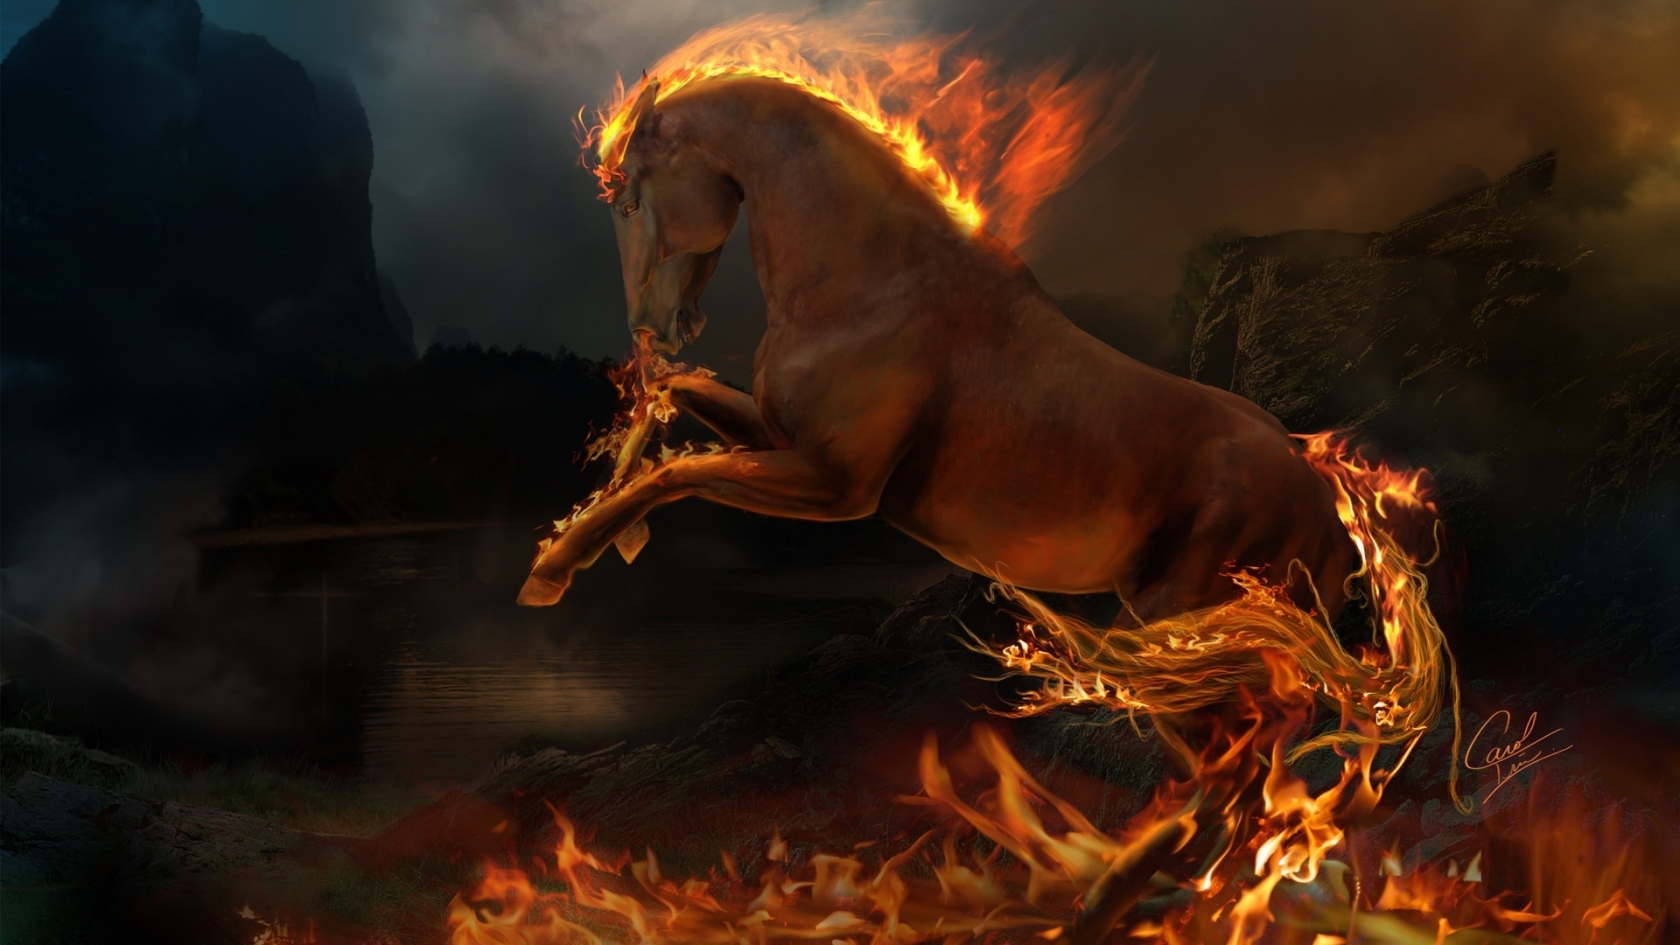 3D burning horse for 1680 x 945 HDTV resolution